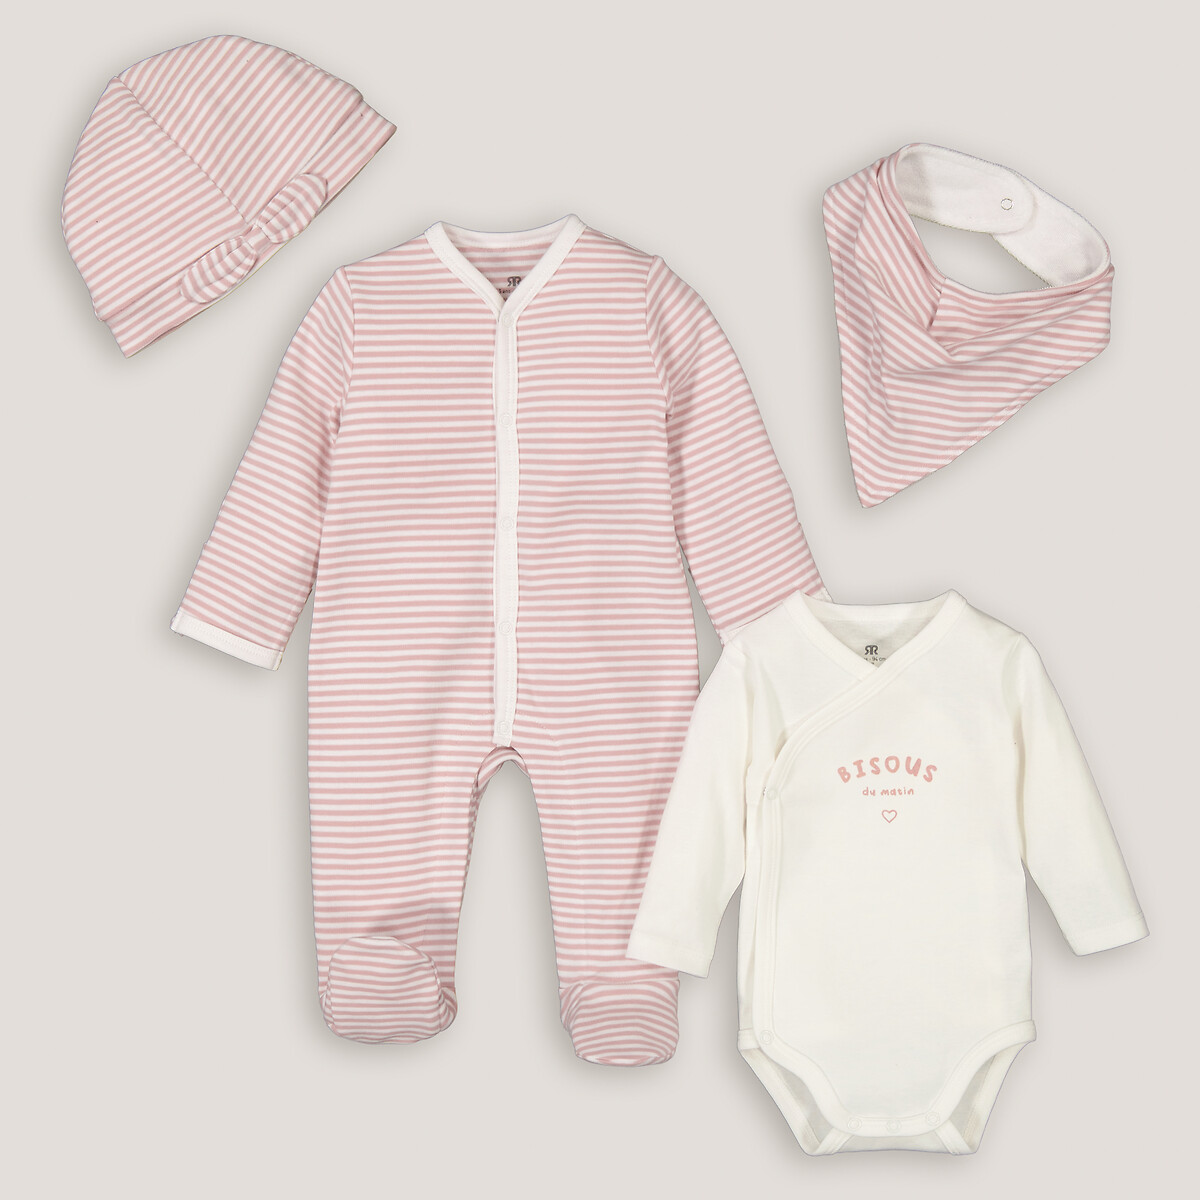 Комплект для новорожденного из четырех LaRedoute розового цвета